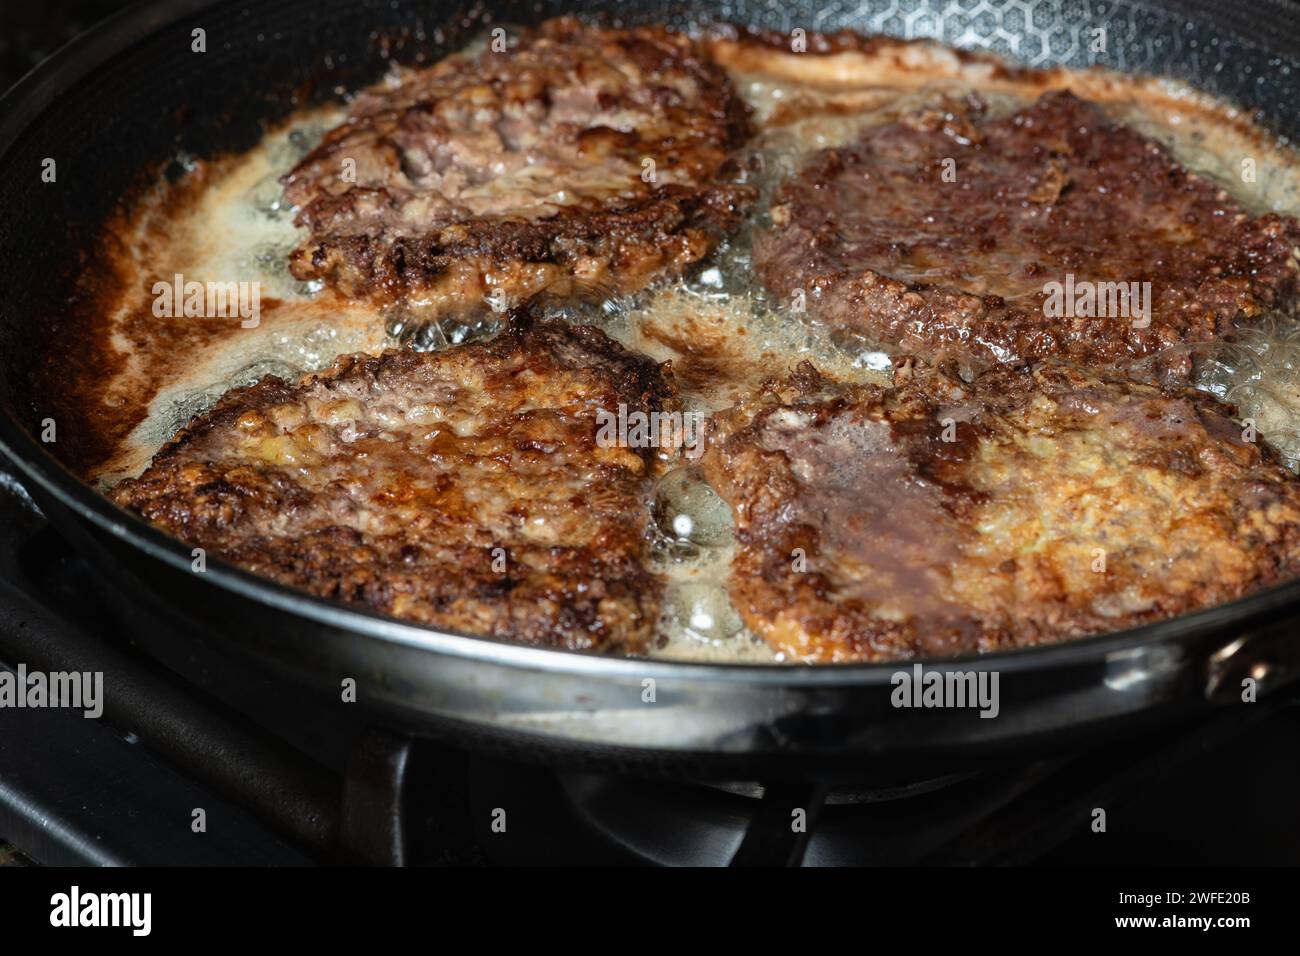 Schnitzel frit dans une poêle sur la table de cuisson à gaz. Concept de cuisine maison. Banque D'Images